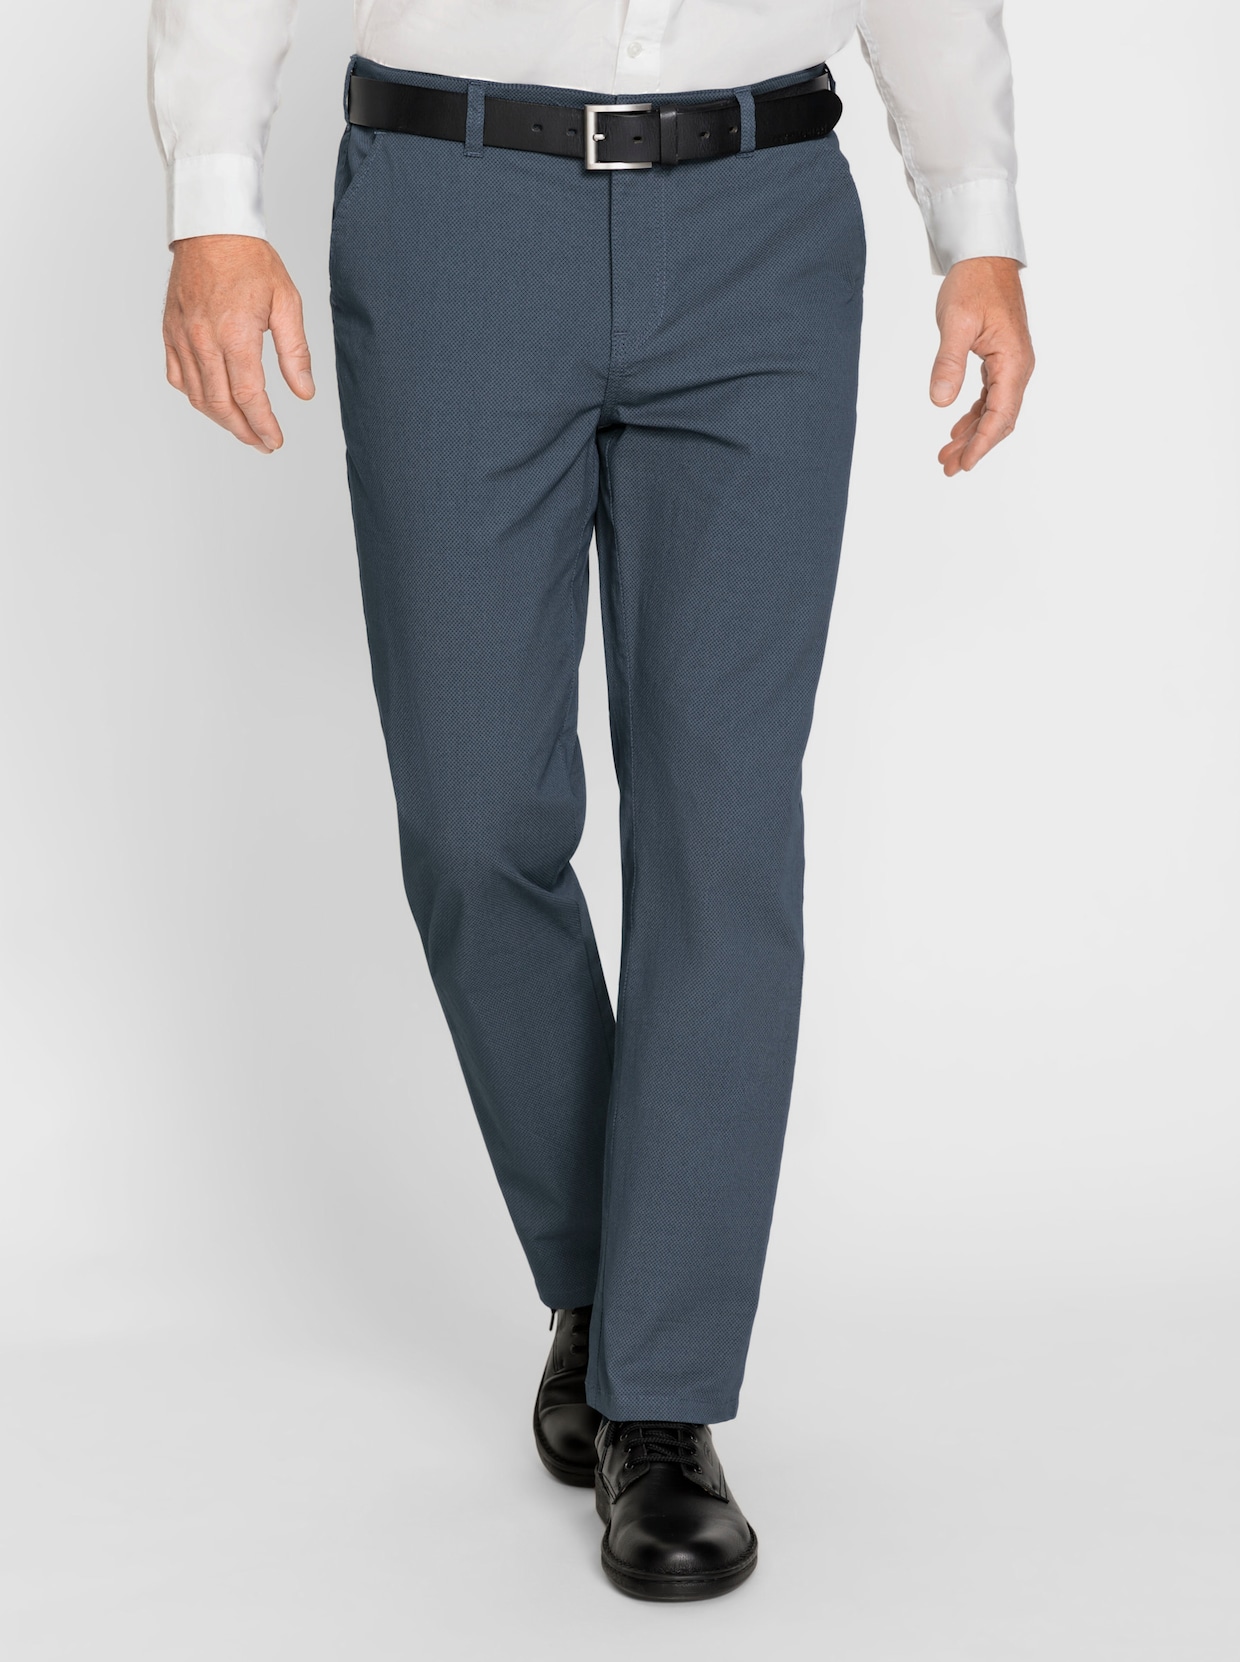 Marco Donati broek - donkerblauw gedessineerd